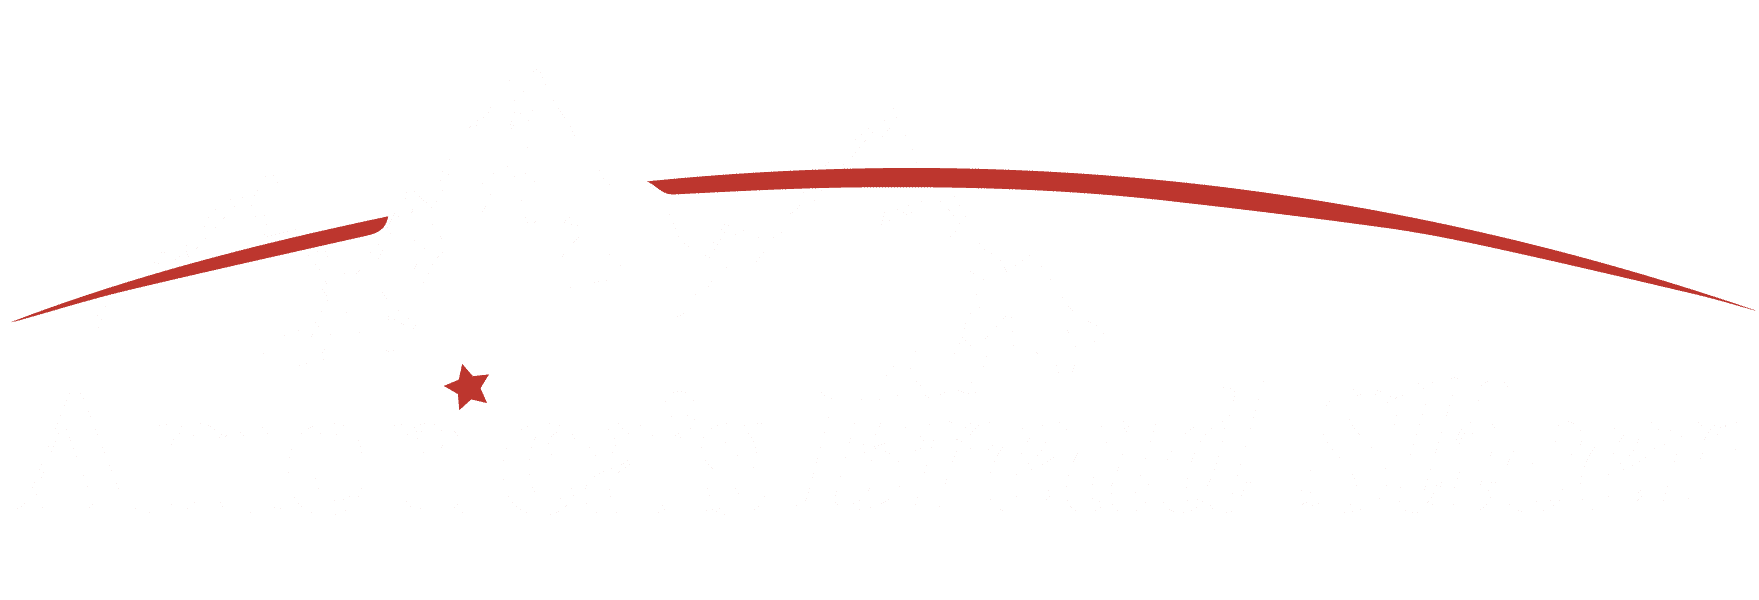 America's Bread Slicer